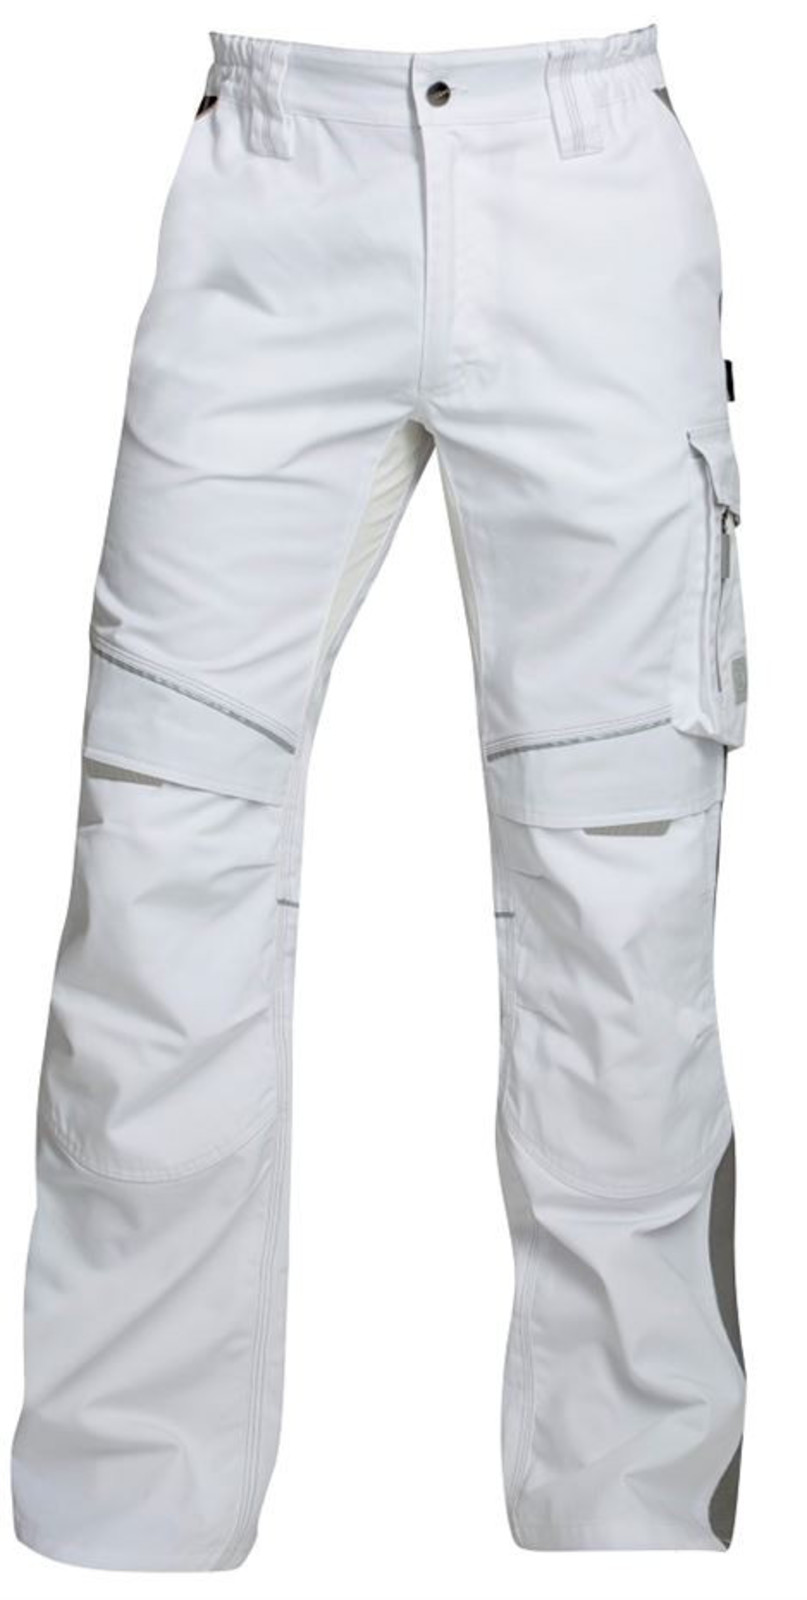 Pánske montérkové nohavice Ardon Urban+ - veľkosť: 54, farba: biela